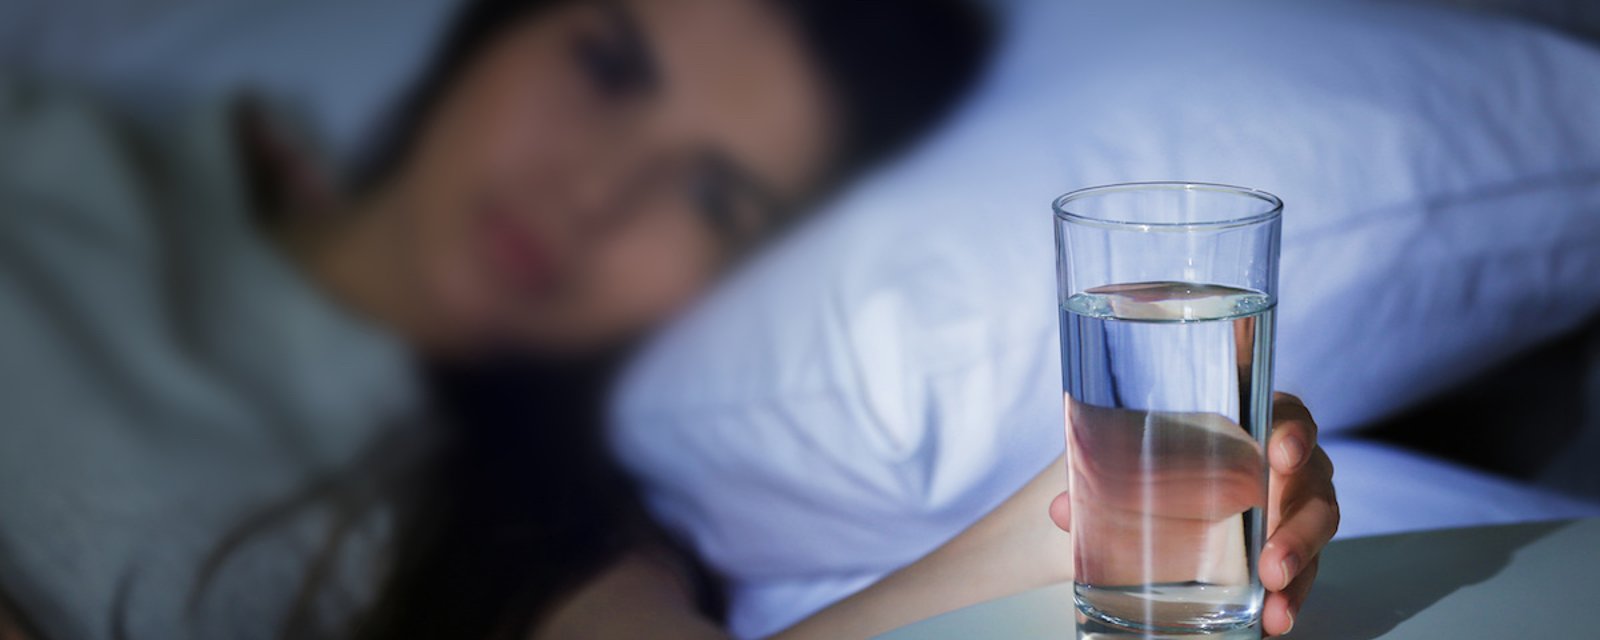 Voici pourquoi vous ne devriez pas laisser un verre d’eau sur votre table de nuit quand vous dormez